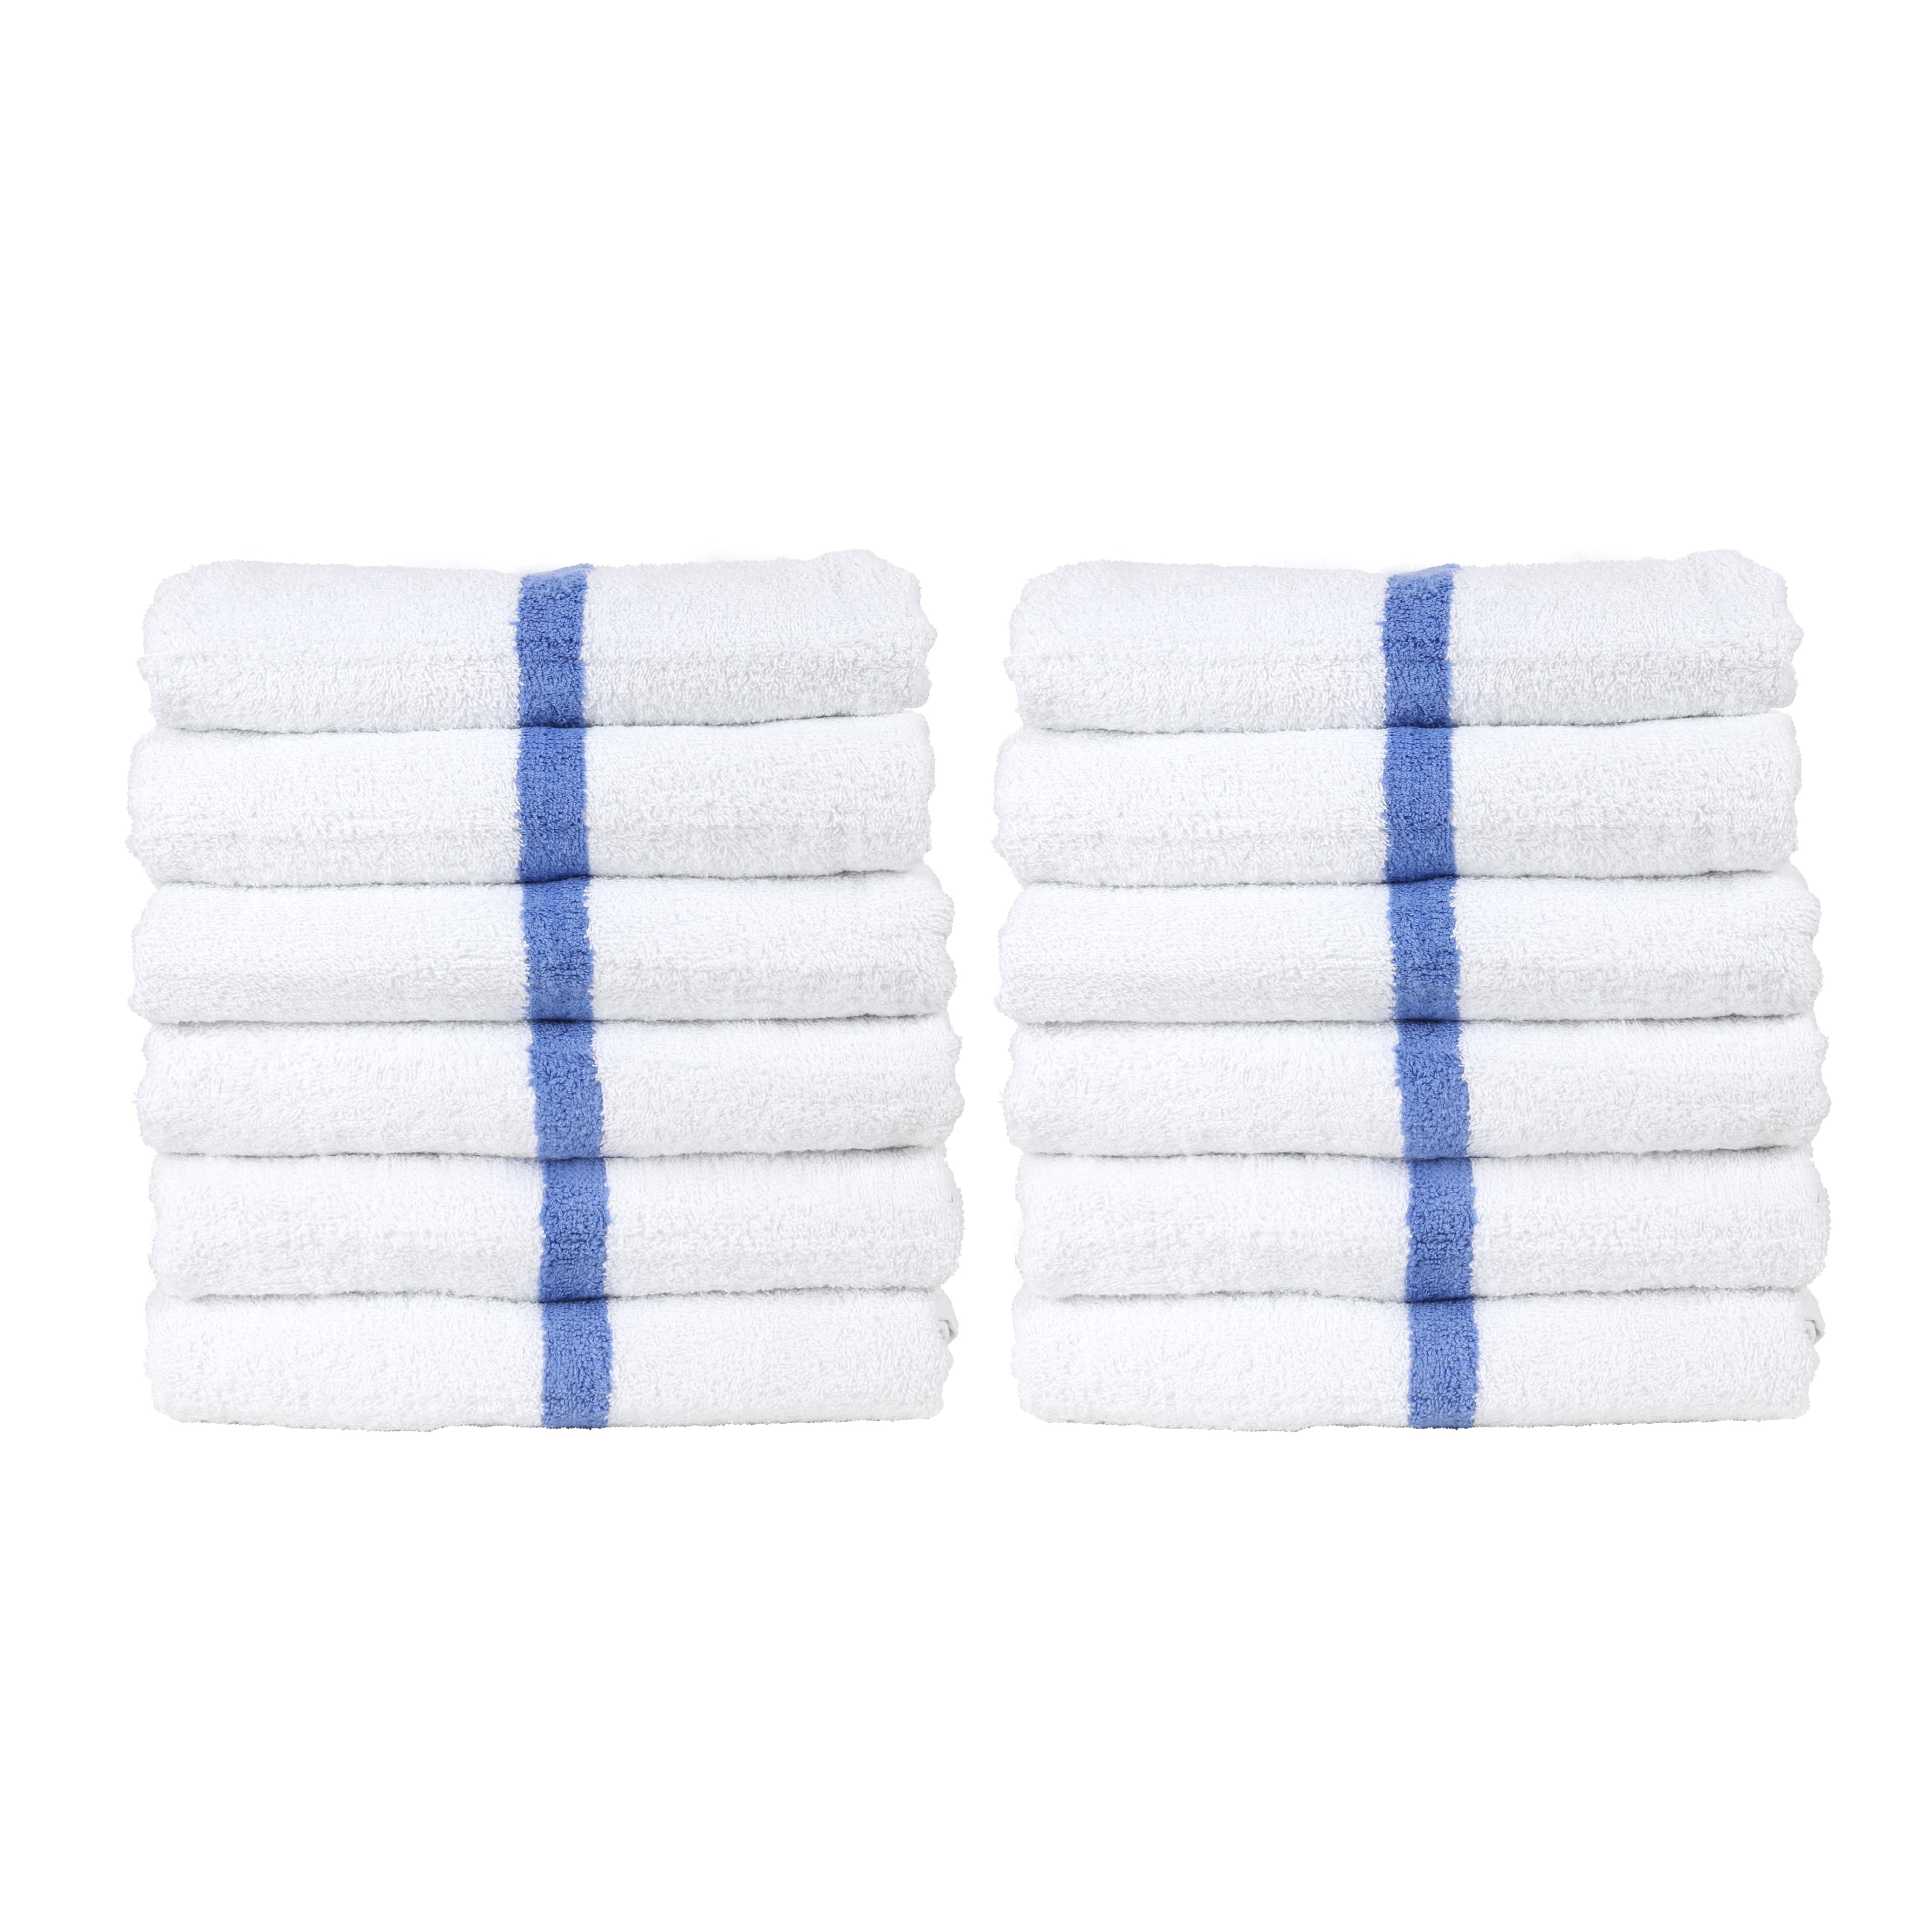 Monarch Brands True Colors 16 x 27 100% Ring Spun Cotton Black Hand Towel  3 lb. - 12/Pack